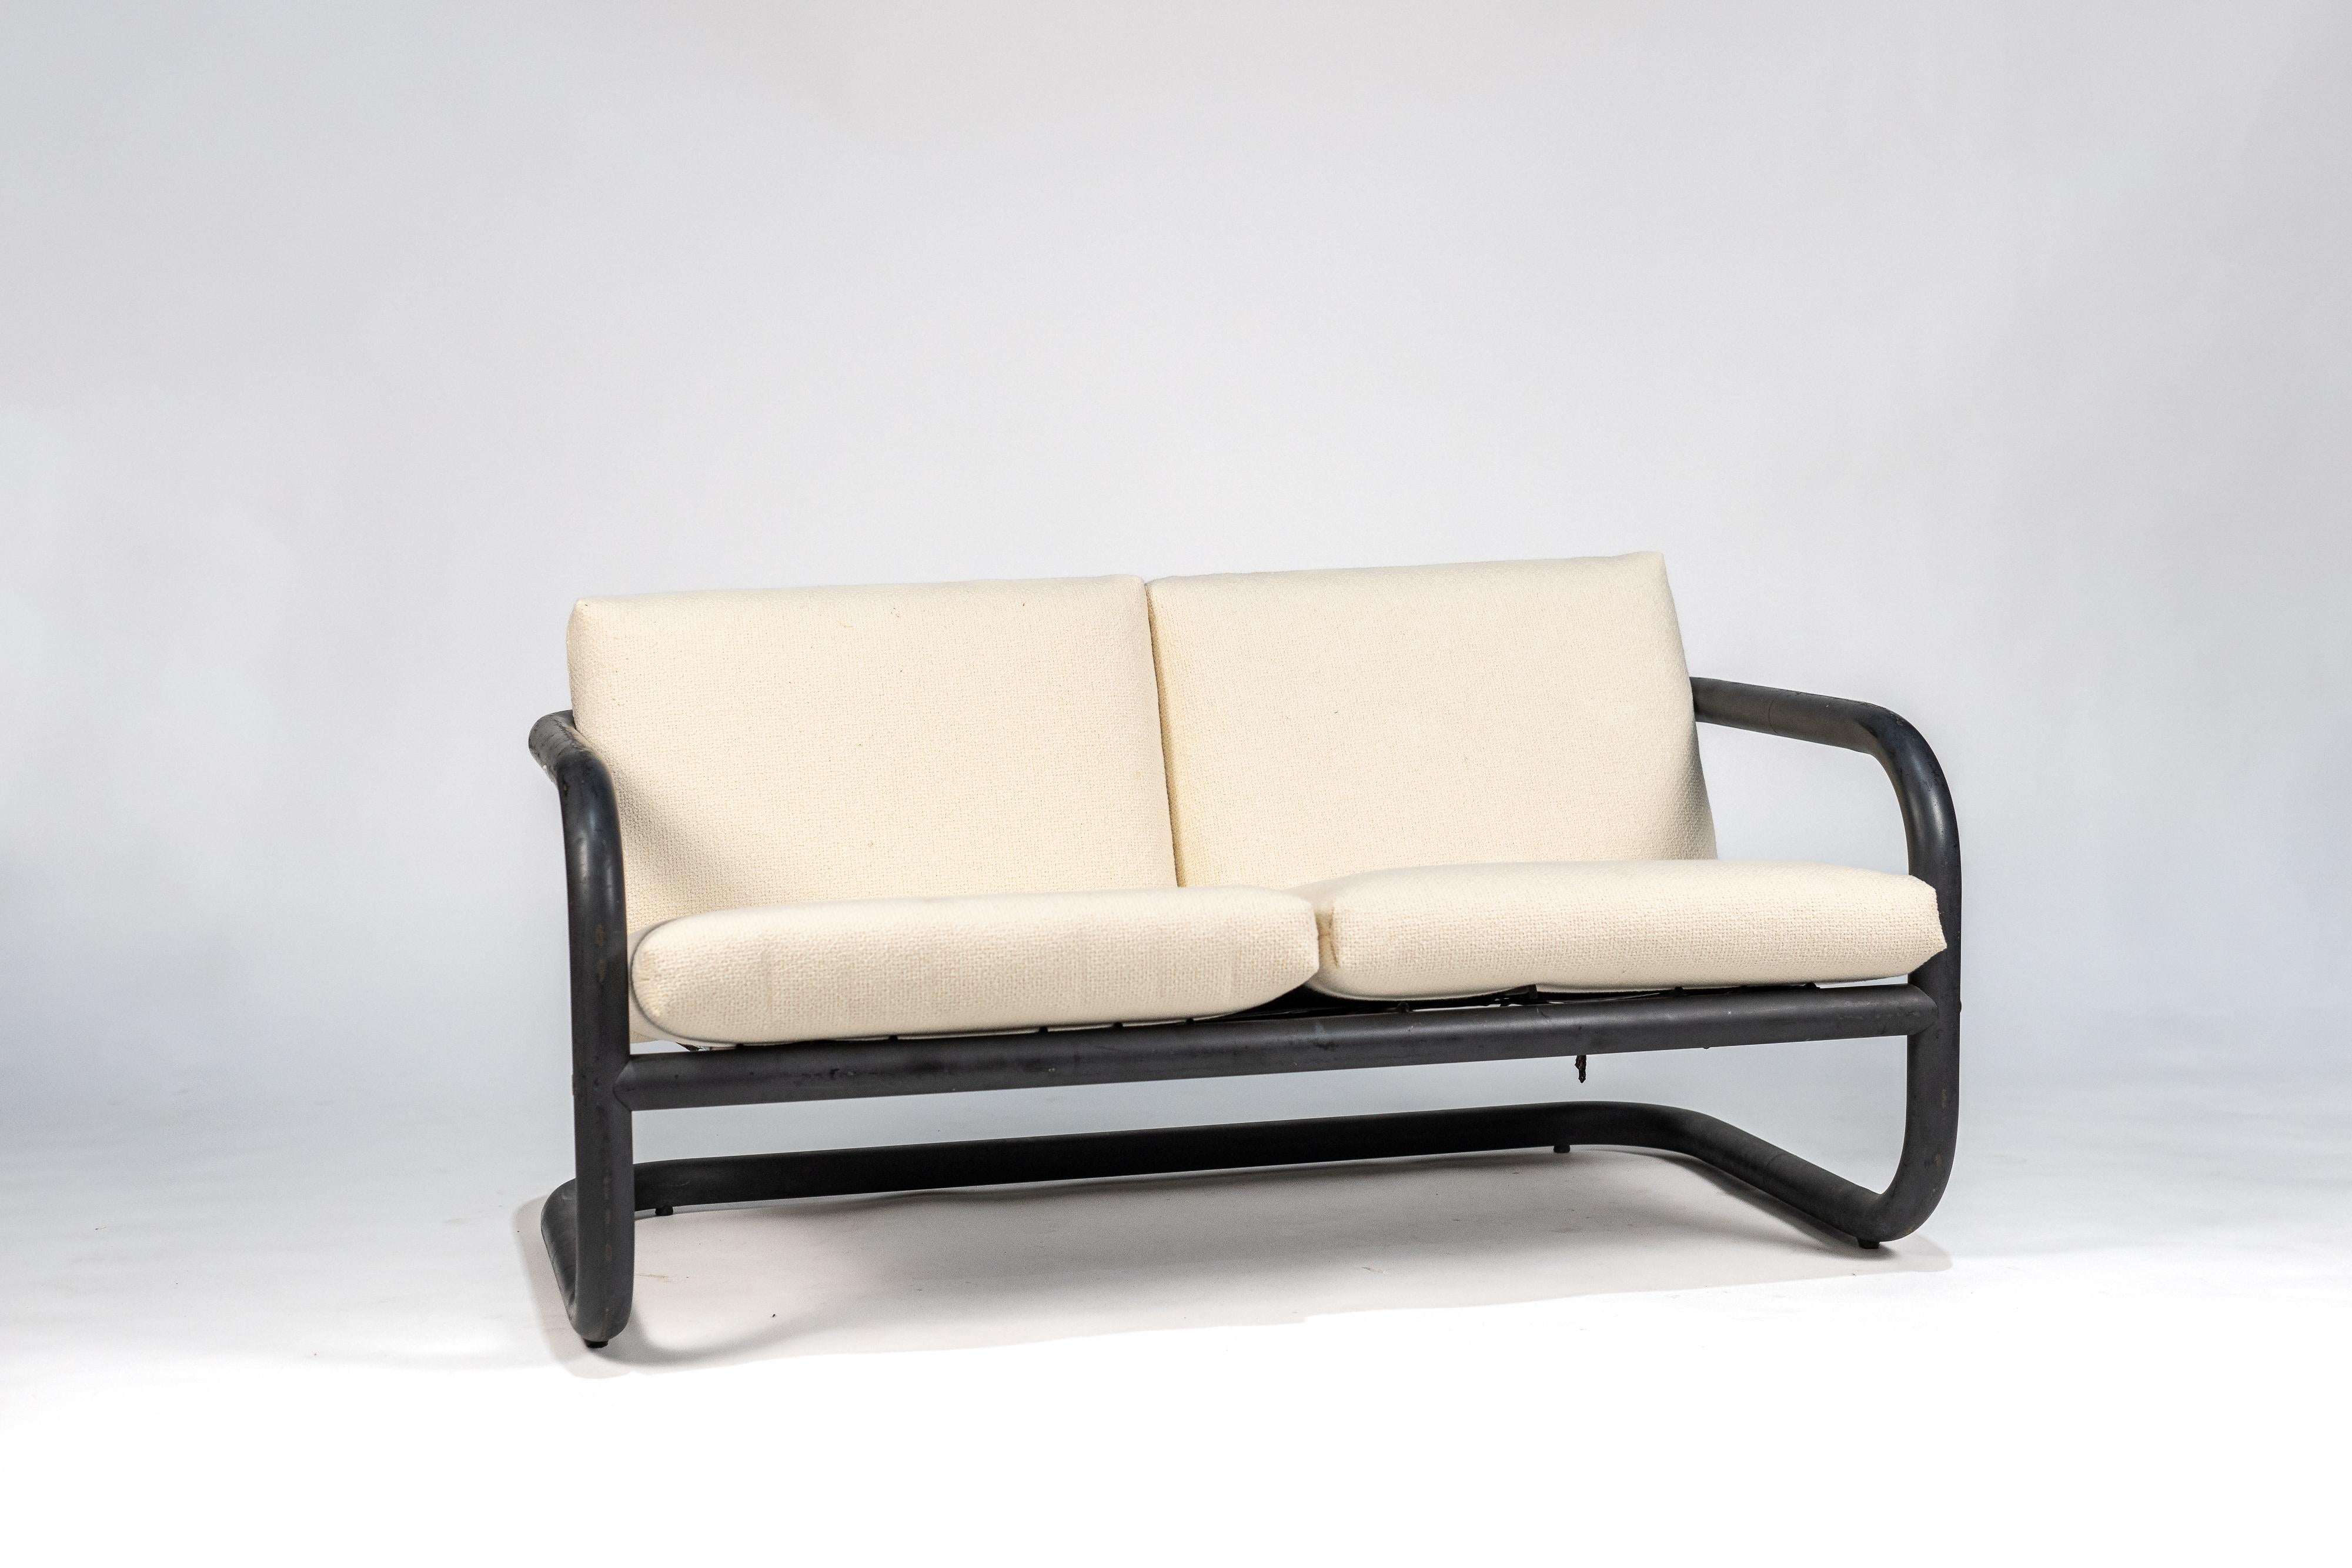 Dieses in den 1970er Jahren entworfene Dreisitzer-Sofa aus Metallrohr und weißem Stoff von Geraldo de Barros steht in der künstlerischen Kontinuität seines Schöpfers, der ein bedeutender Künstler (Designer, Graveur, Maler, Fotograf, Grafiker und